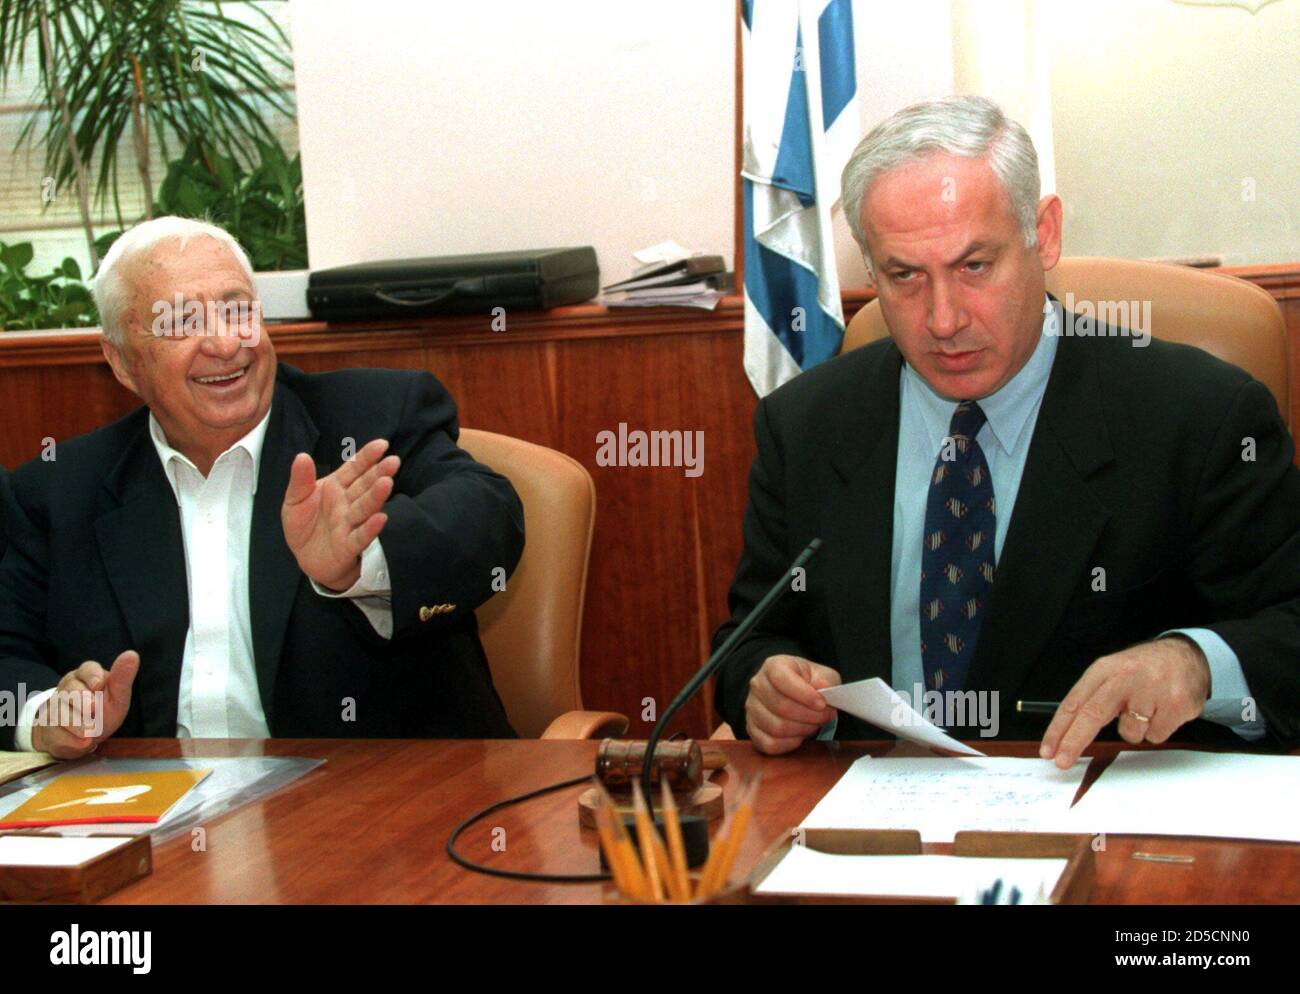 Premierminister Benjamin Netanjahu (R) schaut aus seinen Papieren, während Außenminister Ariel 'Arik' Sharon einem Minister am Tisch zumutet, als am 5. November die Kabinettssitzung zur Ratifizierung des Wye-Friedensabkommens beginnt. Nach tagelangen Verzögerungen setzte sich das Kabinett schließlich zu einer Marathonsitzung zusammen, bei der Israels Interims-Friedensabkommen mit den Palästinensern ratifiziert werden sollte. Stockfoto